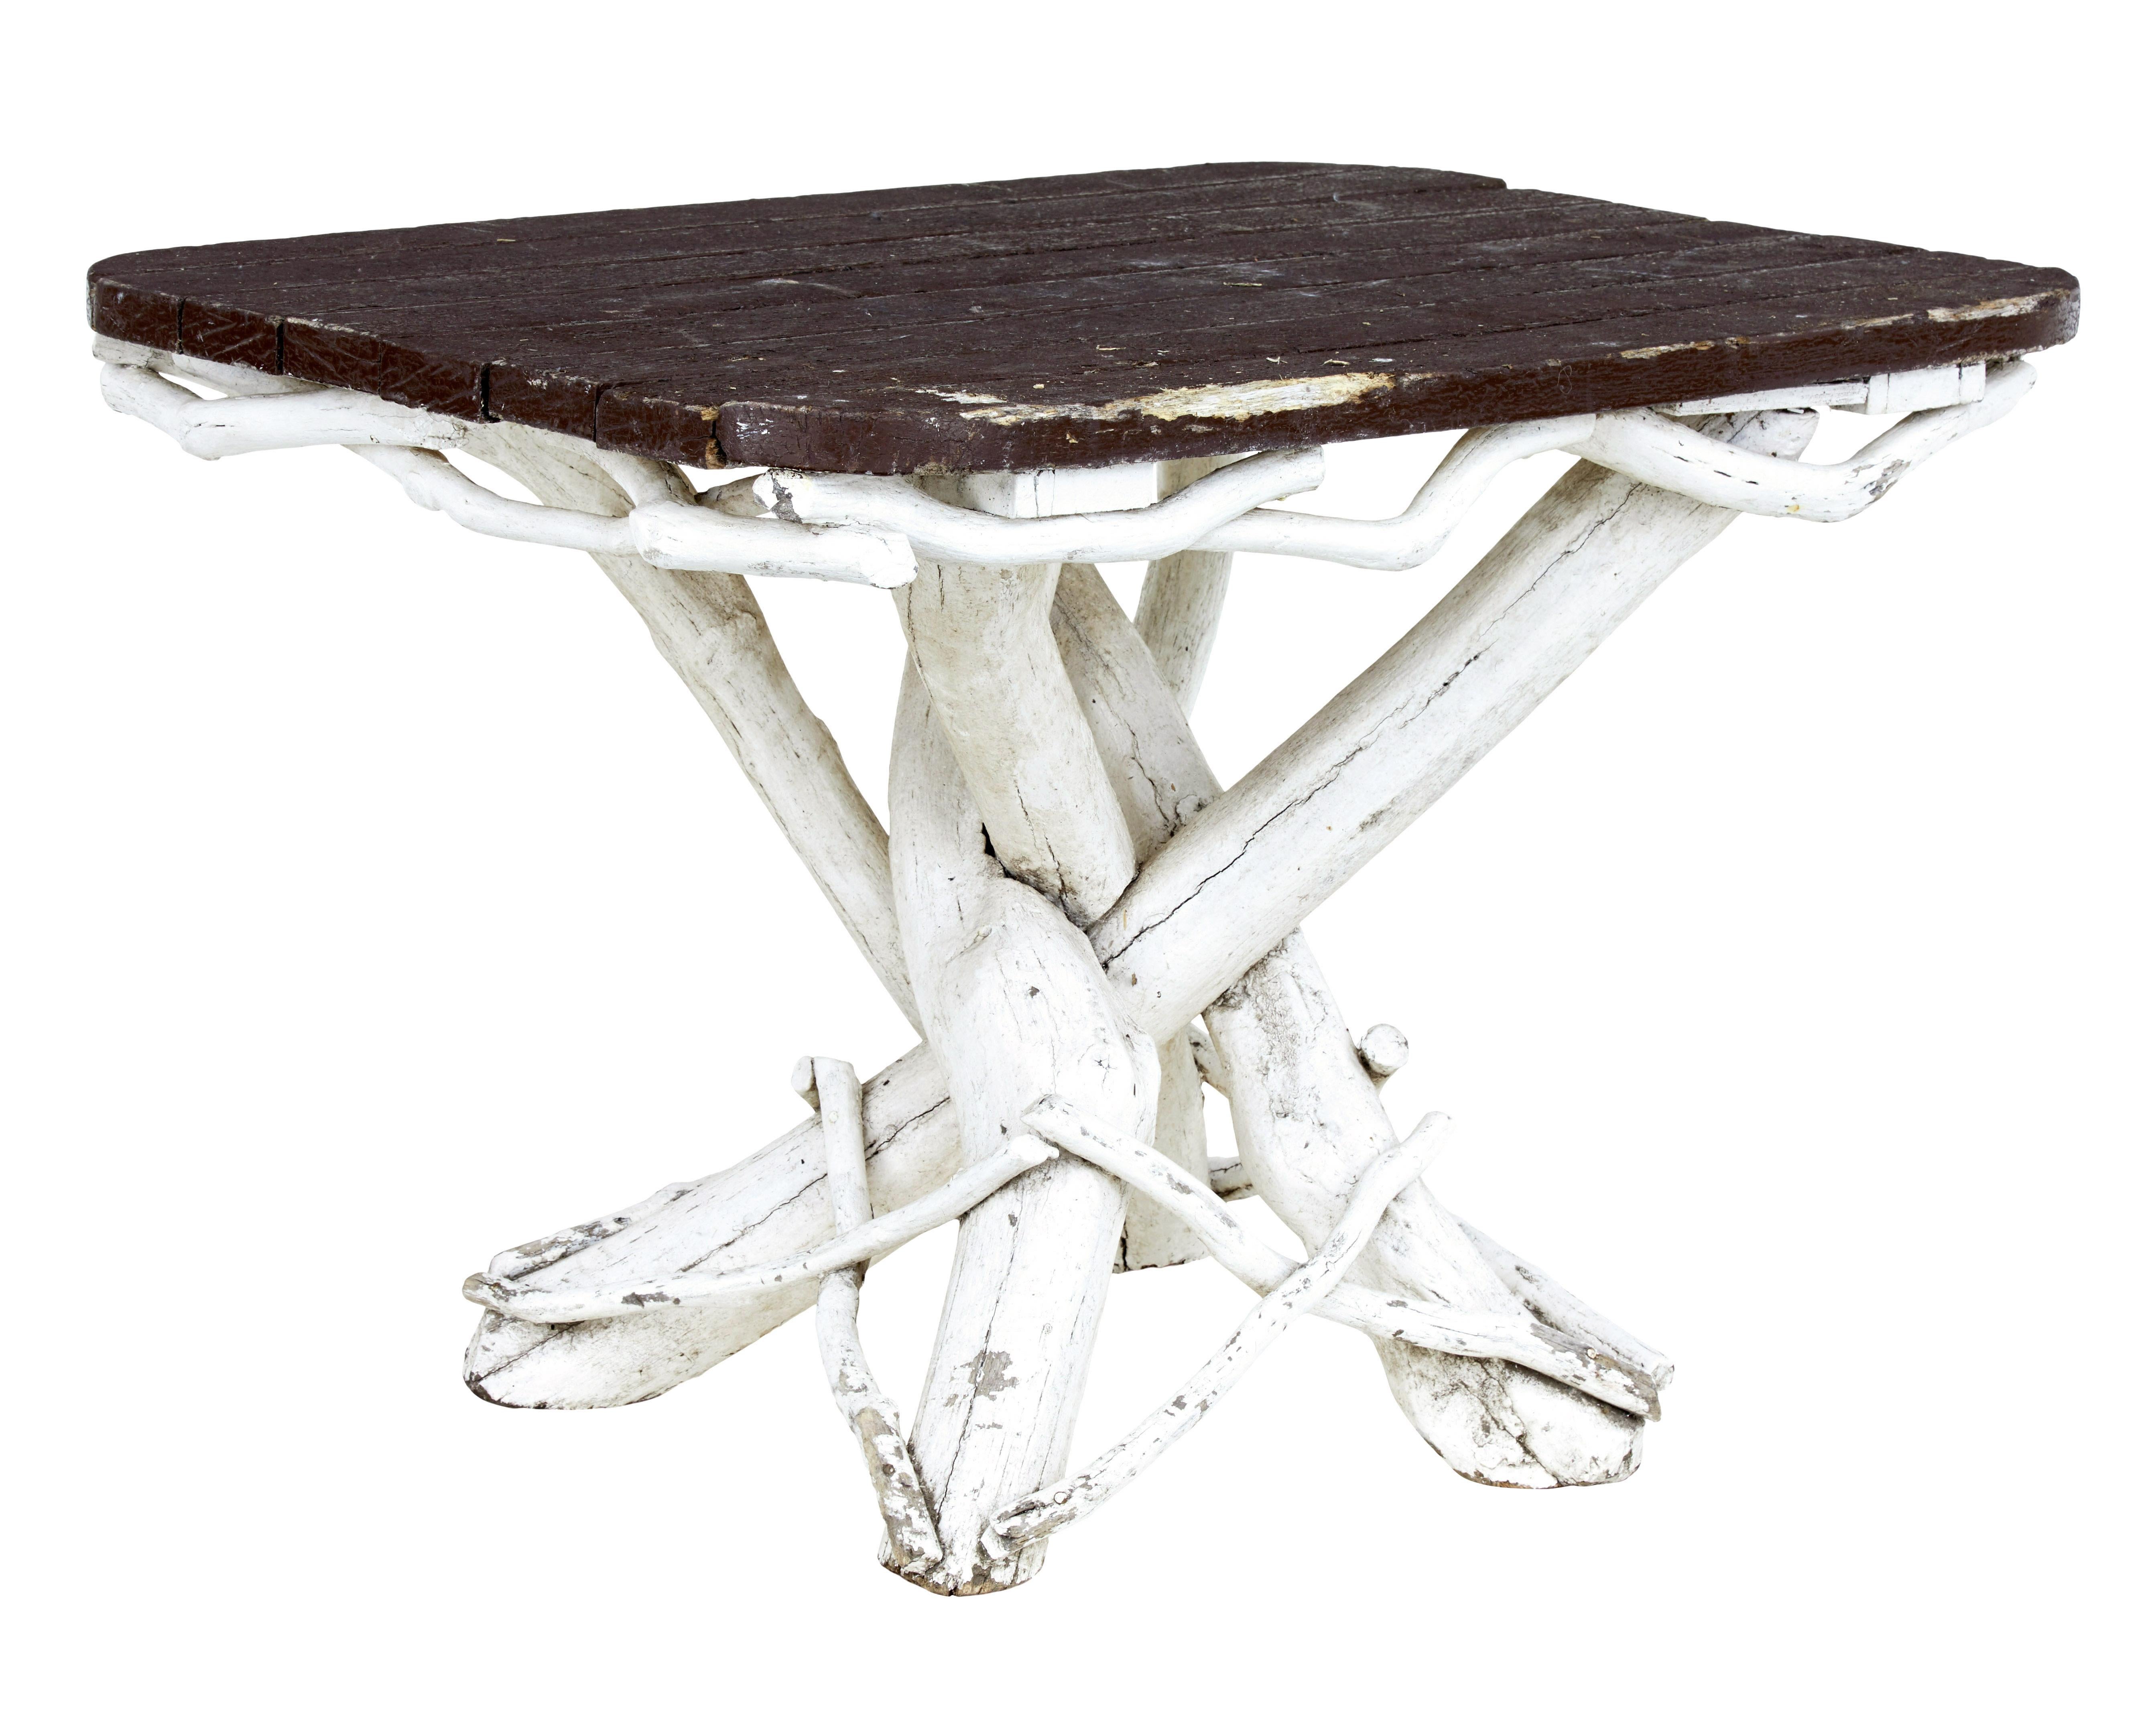 Ungewöhnliches 5-teiliges Garten-Set aus bemaltem Naturholz um 1940.

Rustikale schwedische Holzarbeit, bei der Äste zu Möbeln verarbeitet wurden.  Das Set besteht aus einem Tisch, einem Sofa, 2 Sesseln und einem Hocker.

Tisch mit überkreuzten